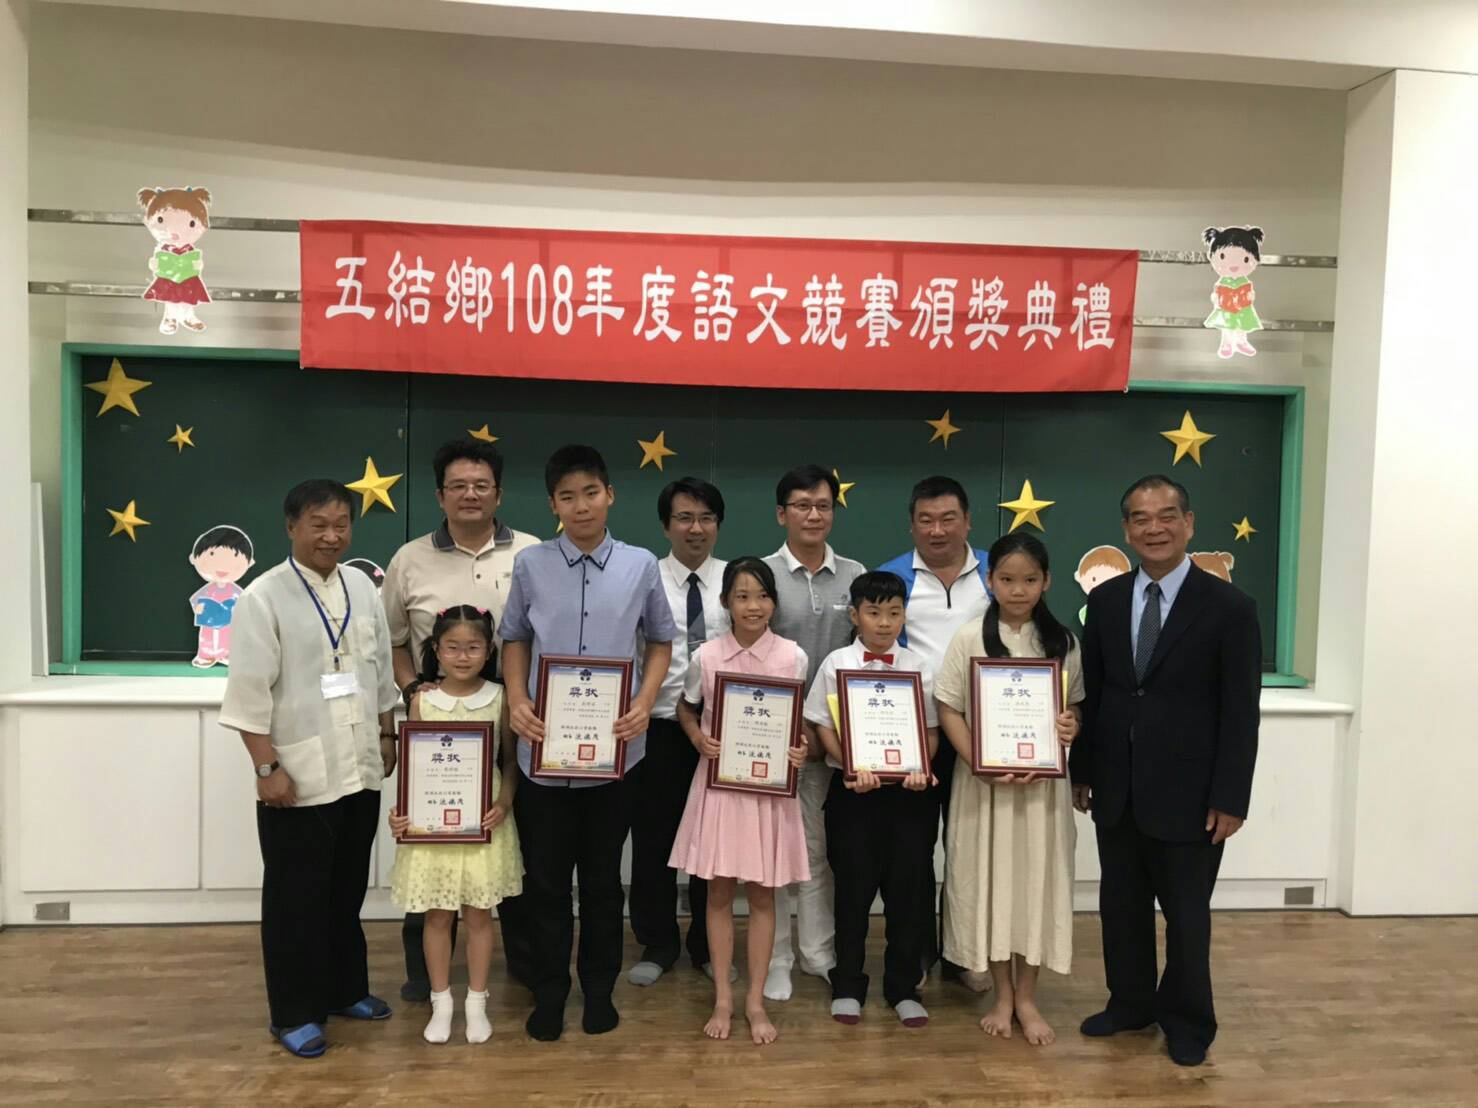 五結鄉108年度國小語文競賽成績揭曉 學進國小贏得最多第一名